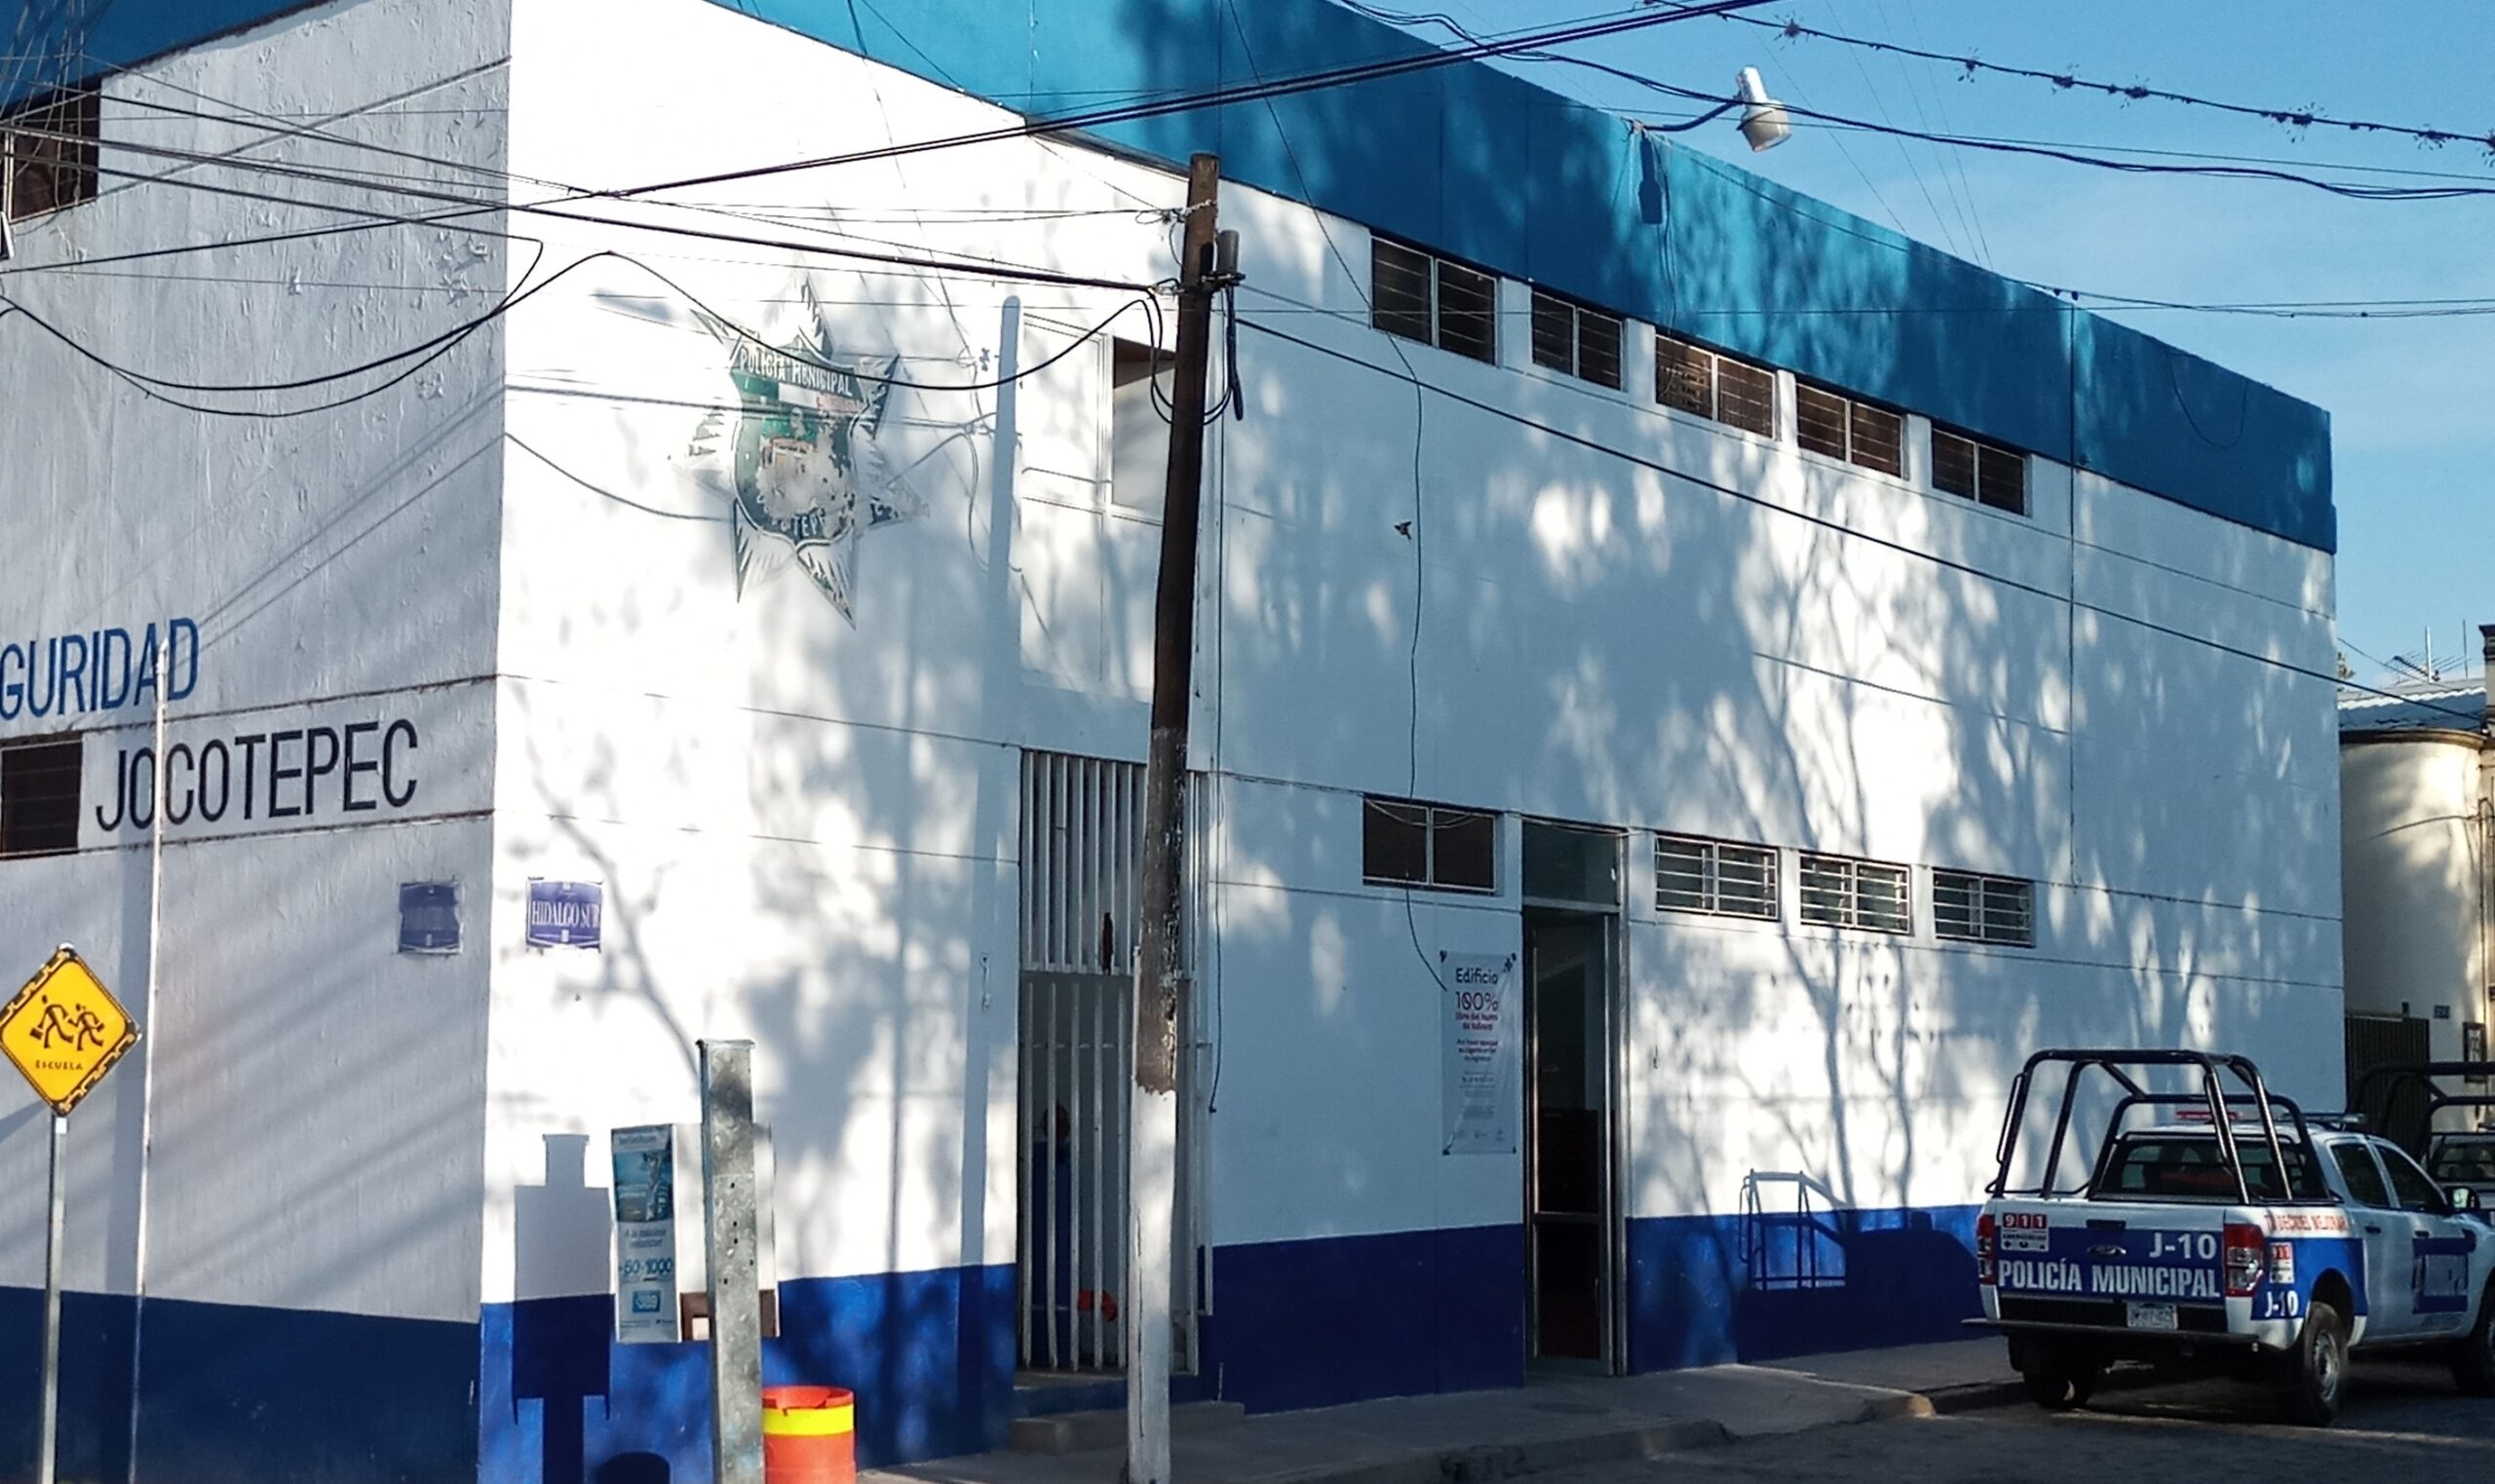 Jocotepec president announces plan for new police station